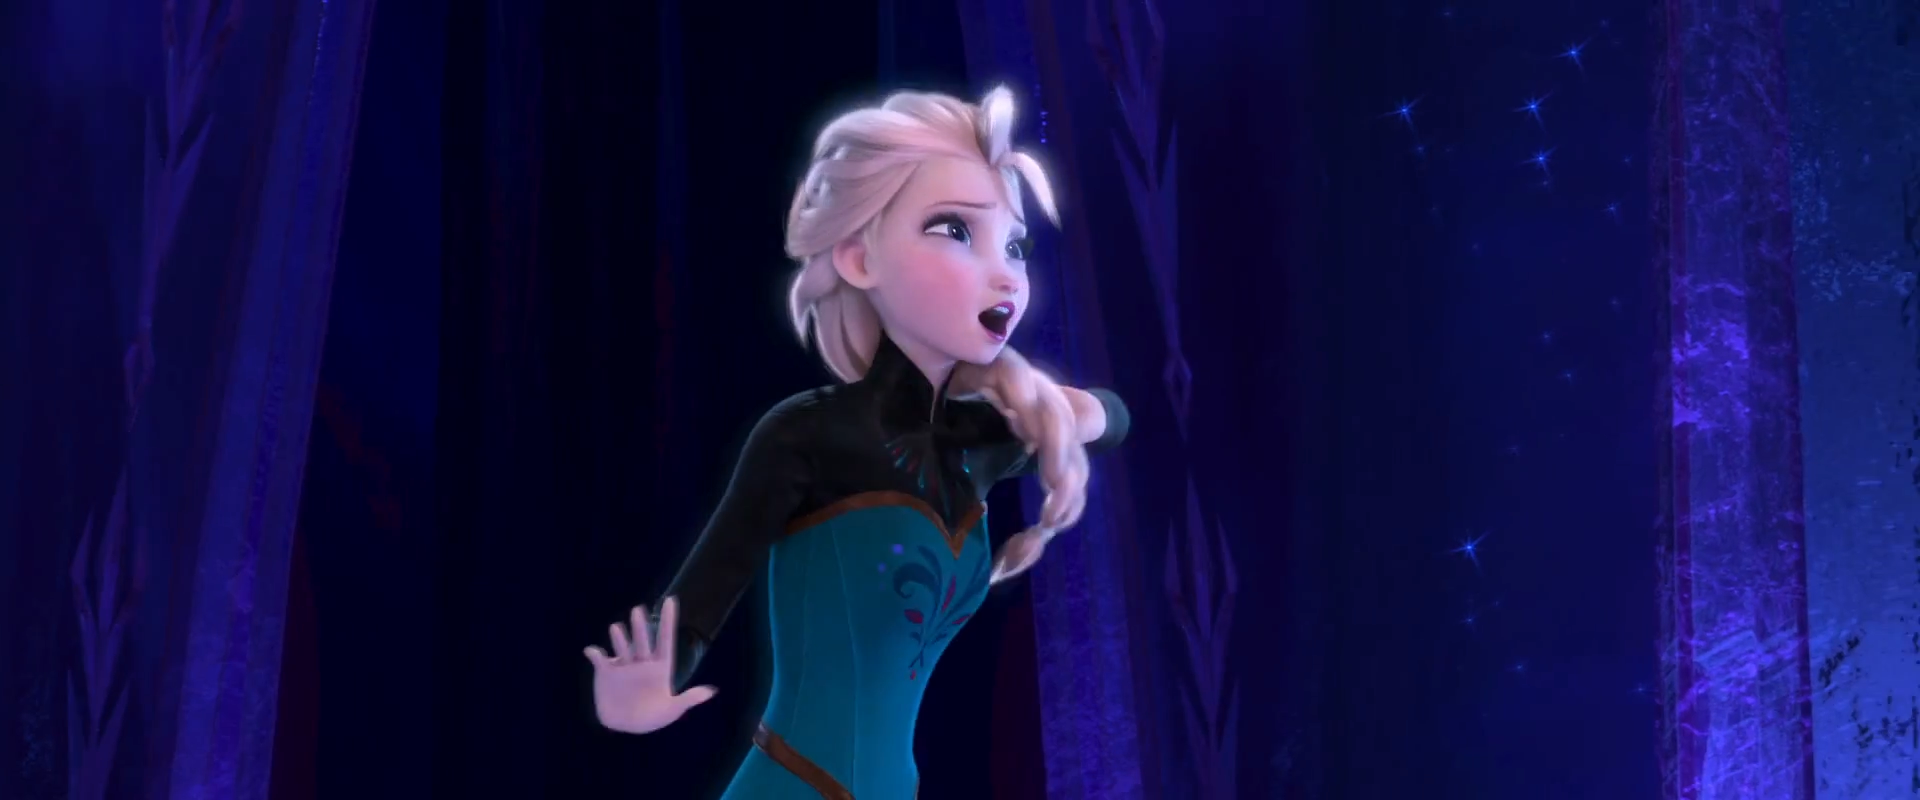 Frozen Photo: Let It Go HD Screencaps.